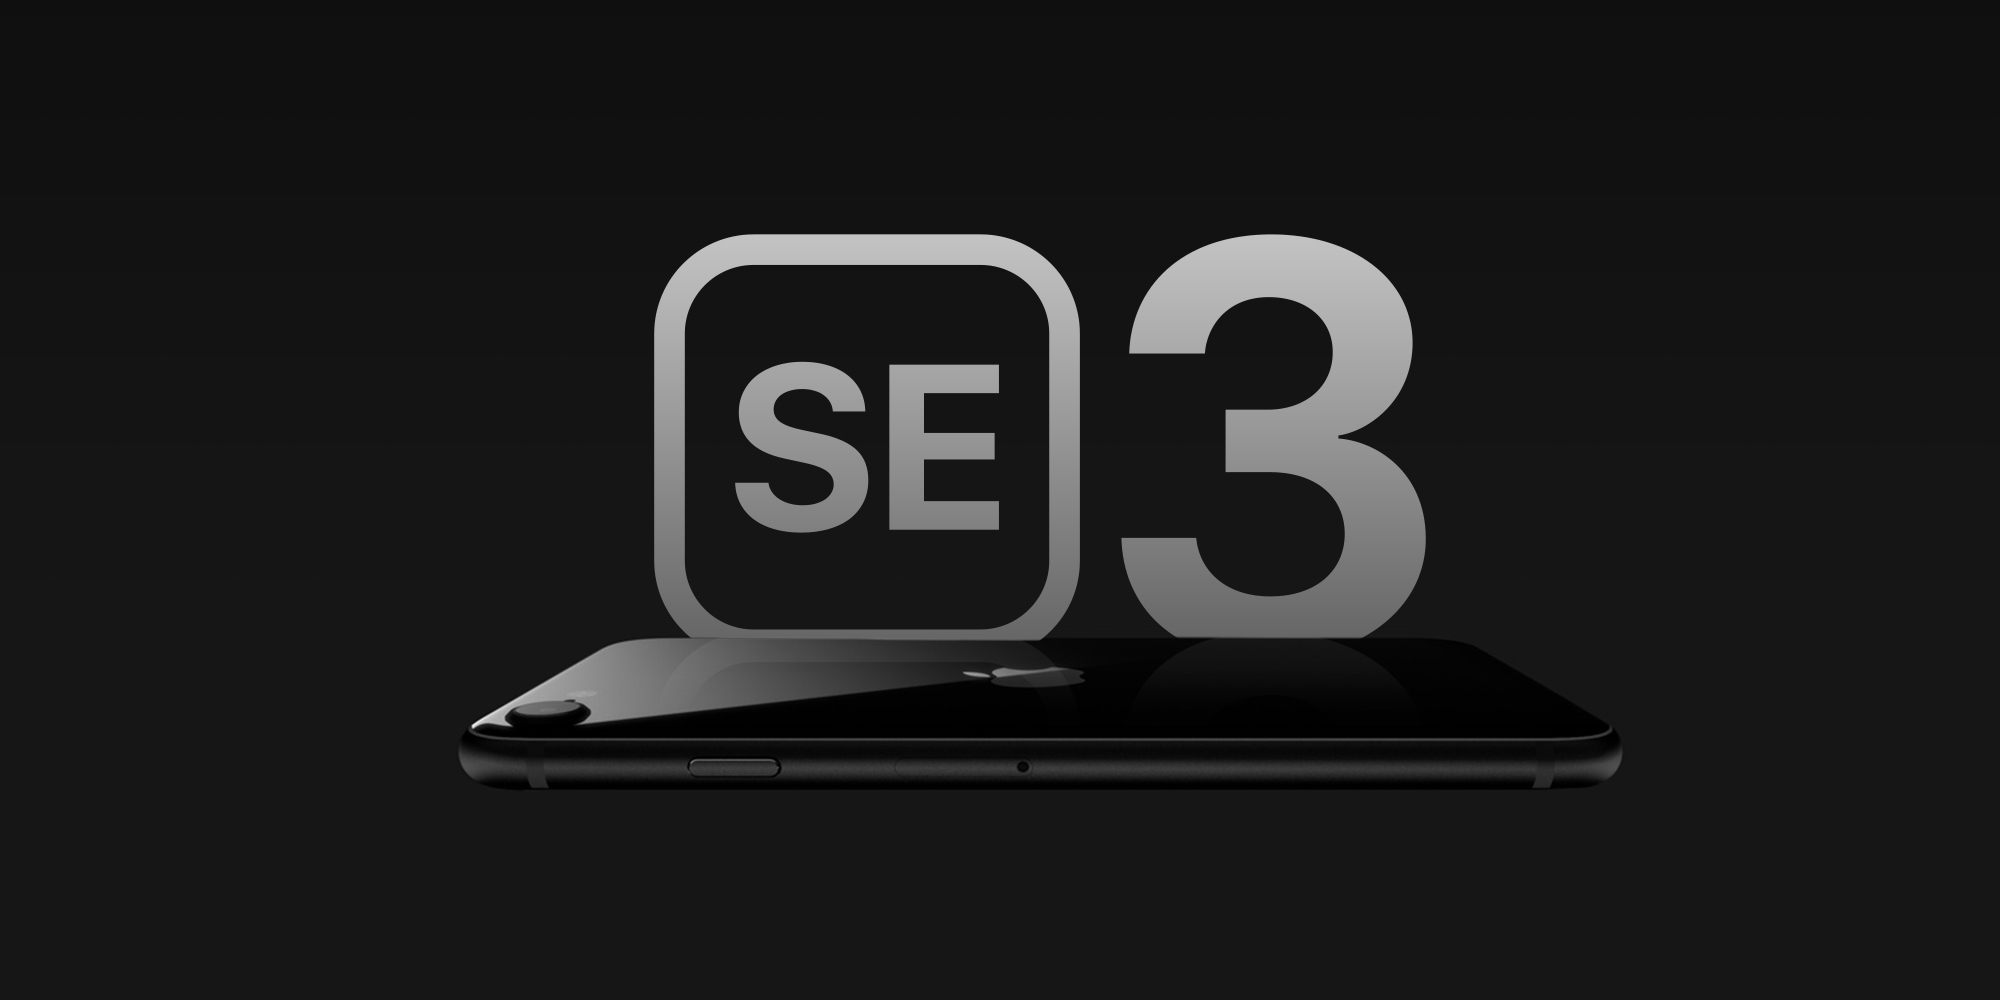 iPhone SE 3 với RAM nâng cấp lên 4GB mang lại hiệu năng mạnh mẽ với phân khúc giá